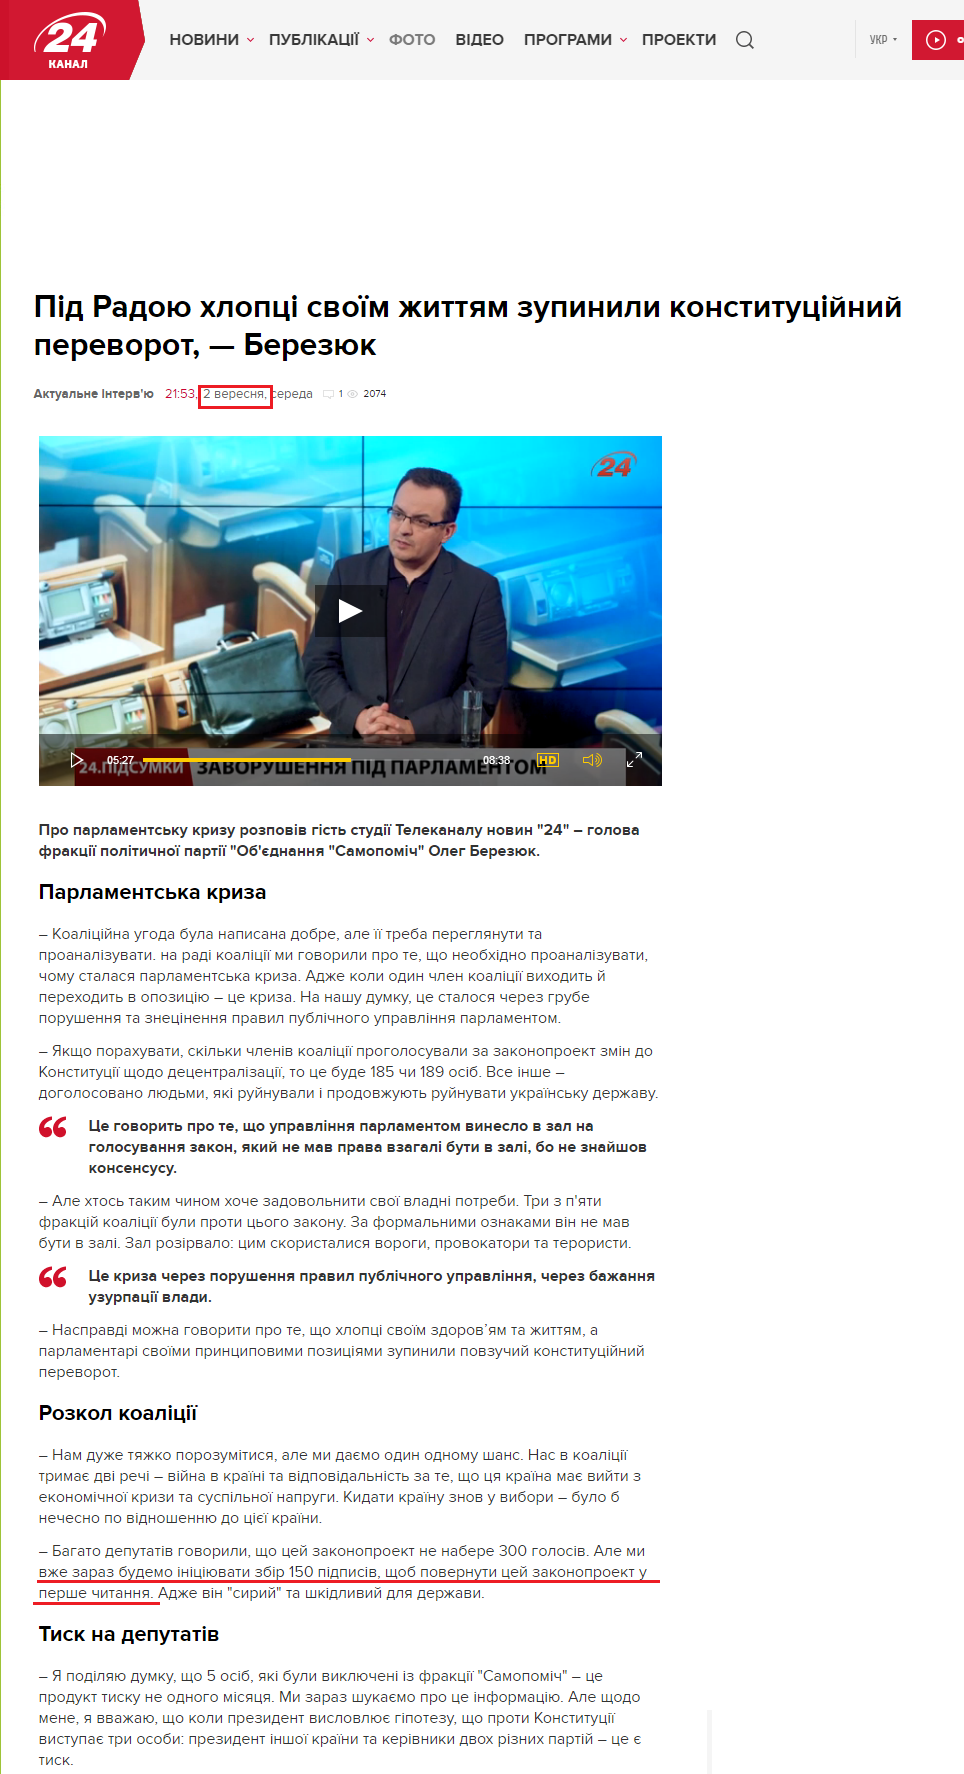 http://24tv.ua/news/showNews.do?pid_radoyu_hloptsi_svoyim_zhittyam_zupinili_konstitutsiyniy_perevorot__berezyuk&objectId=608044